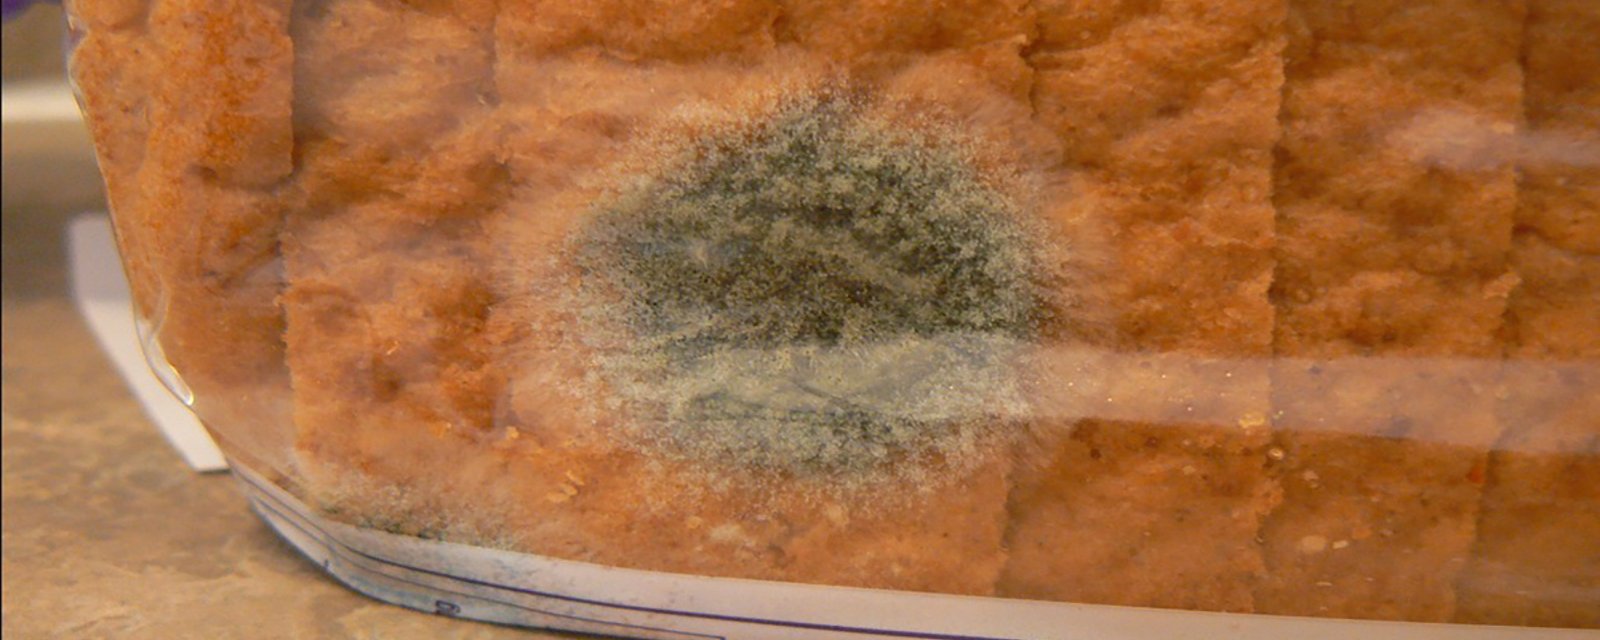 Une seule tranche de pain présente des traces de moisissure, est-ce que les autres tranches peuvent être consommées?